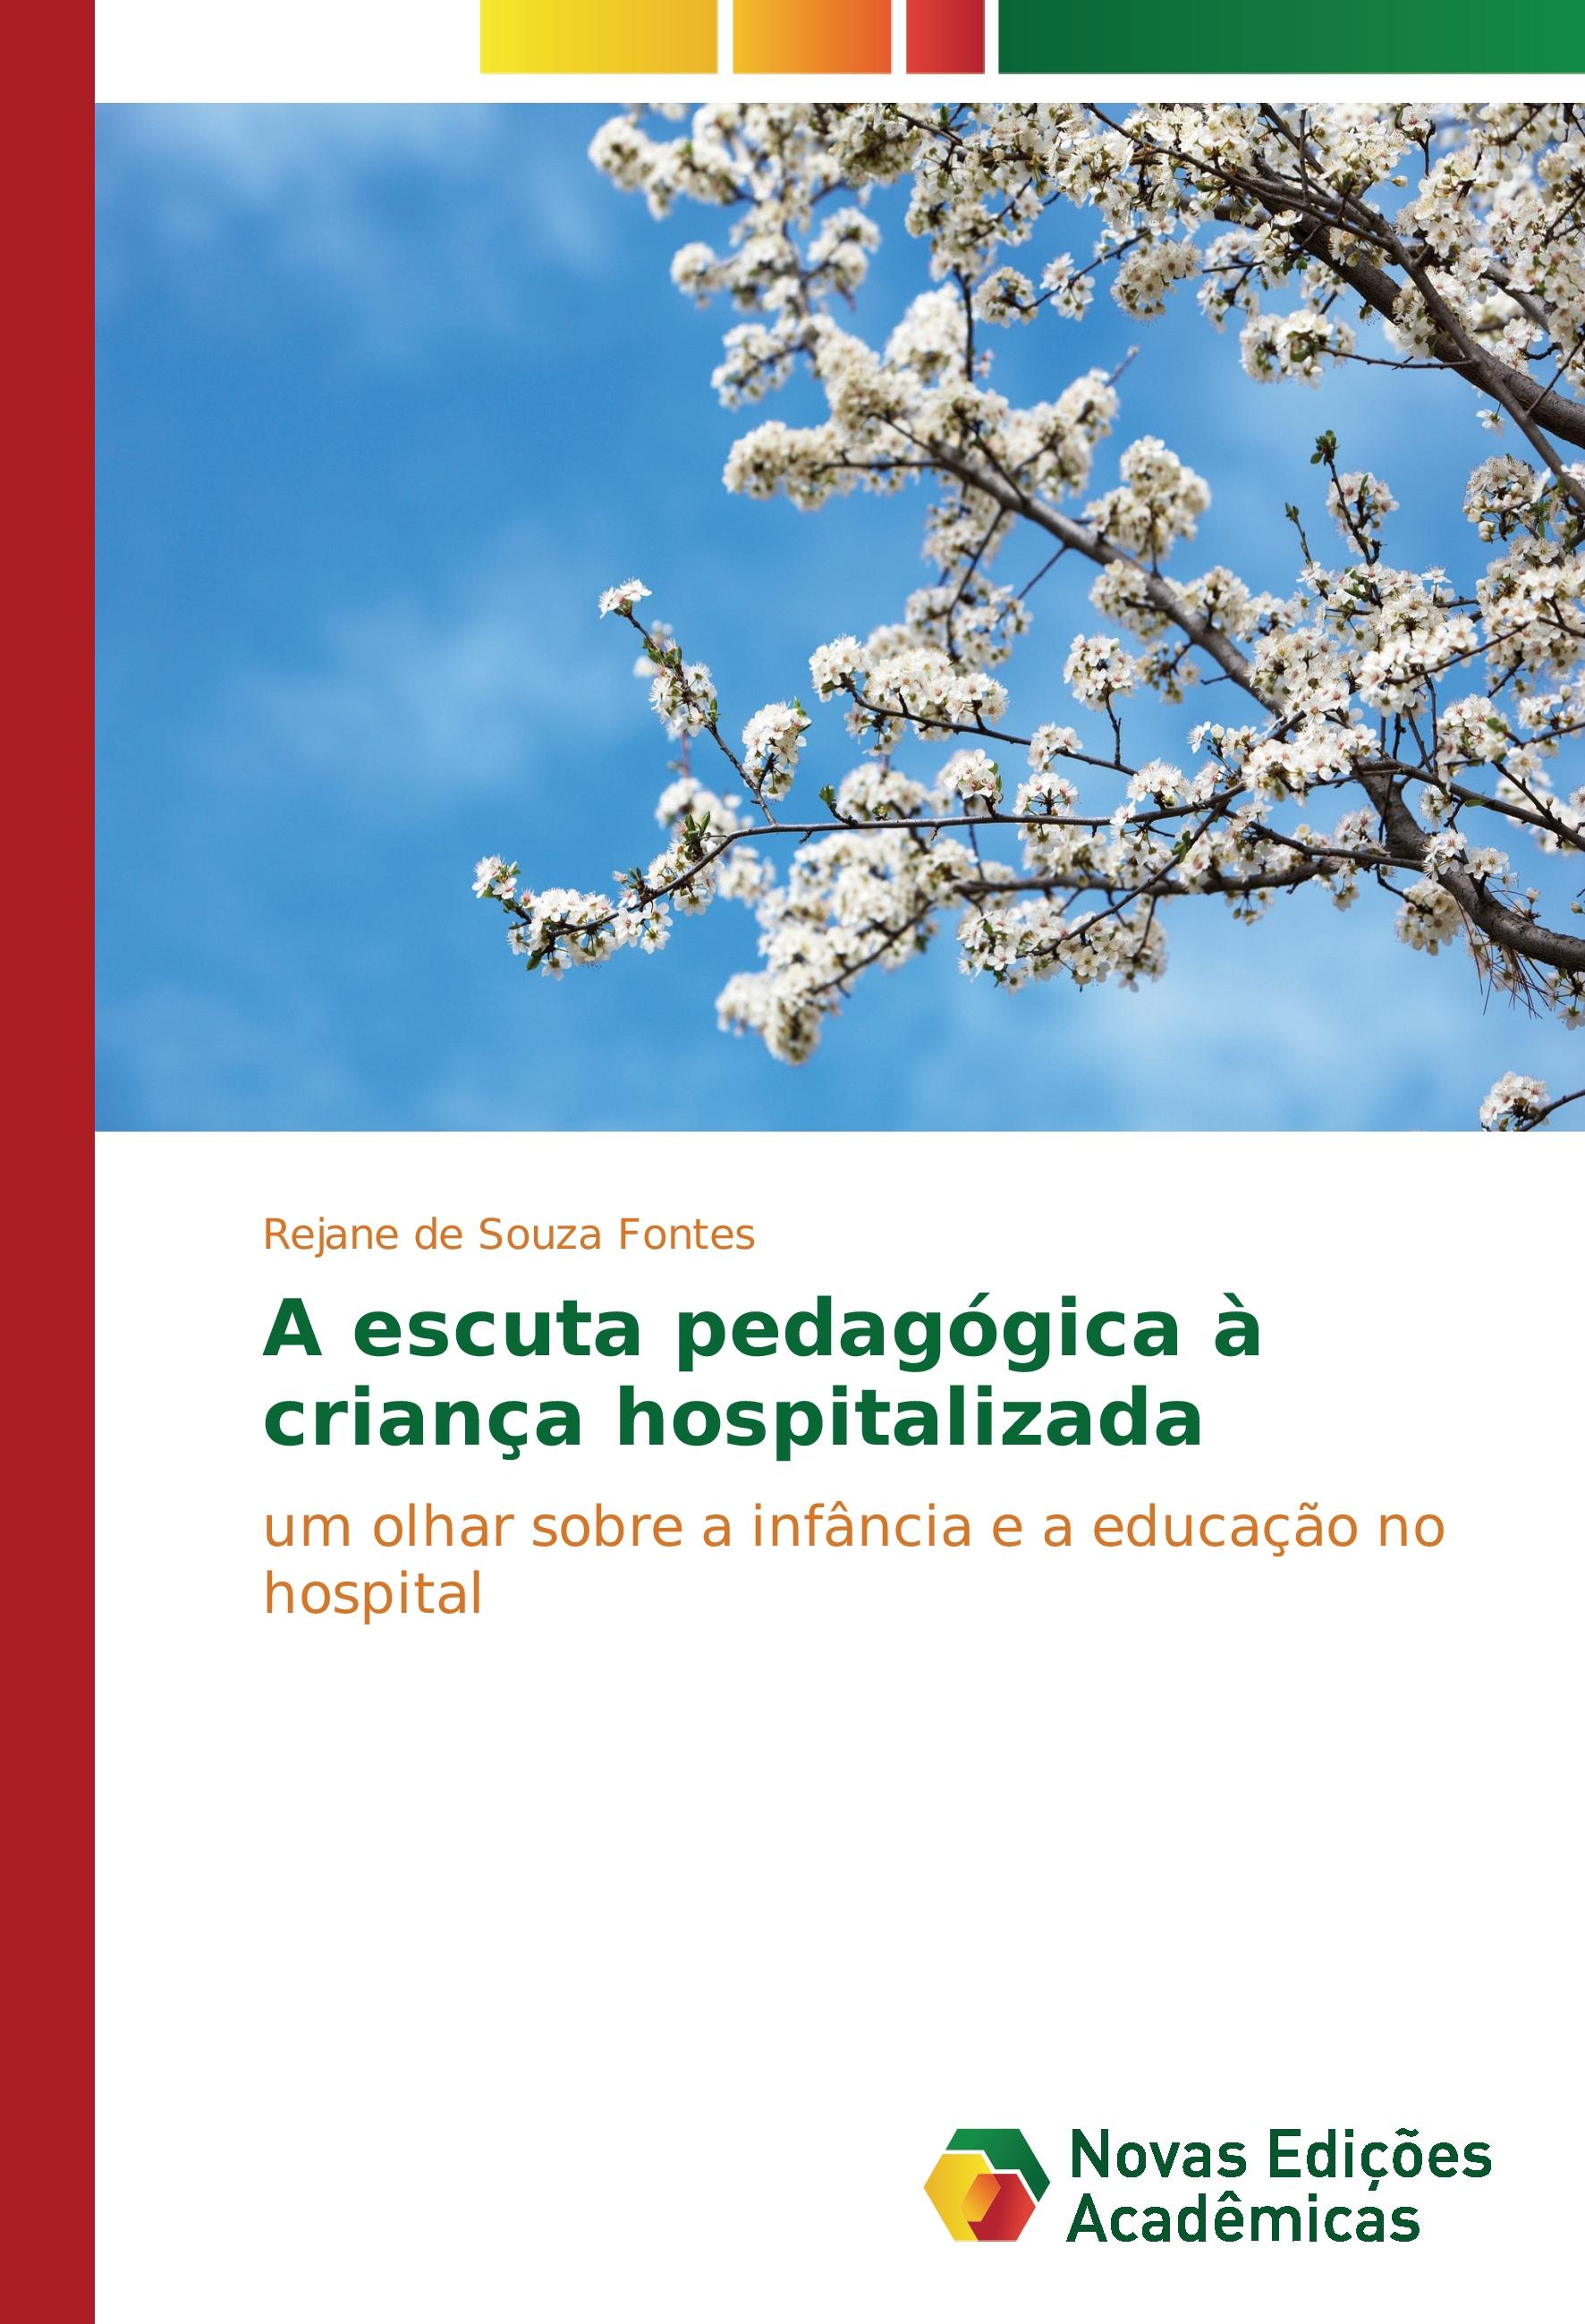 A escuta pedagógica à criança hospitalizada - Rejane de Souza Fontes